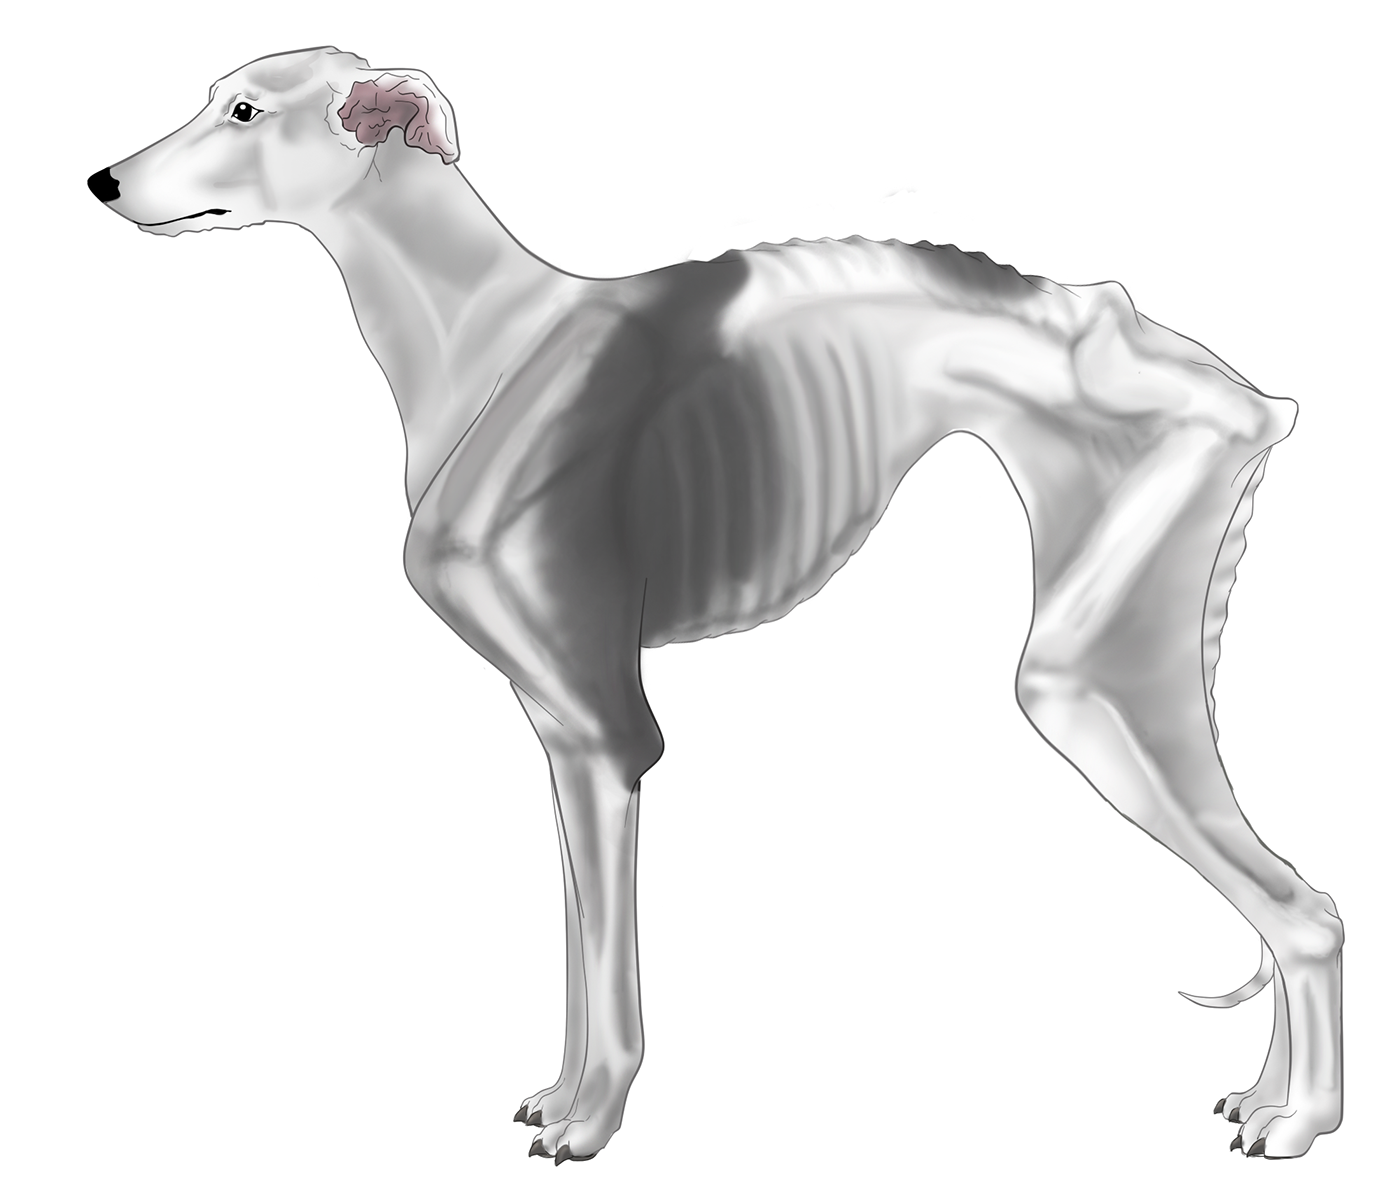 whippet cachorro cão dog GALGO escore corporal obesidade canina anatomia